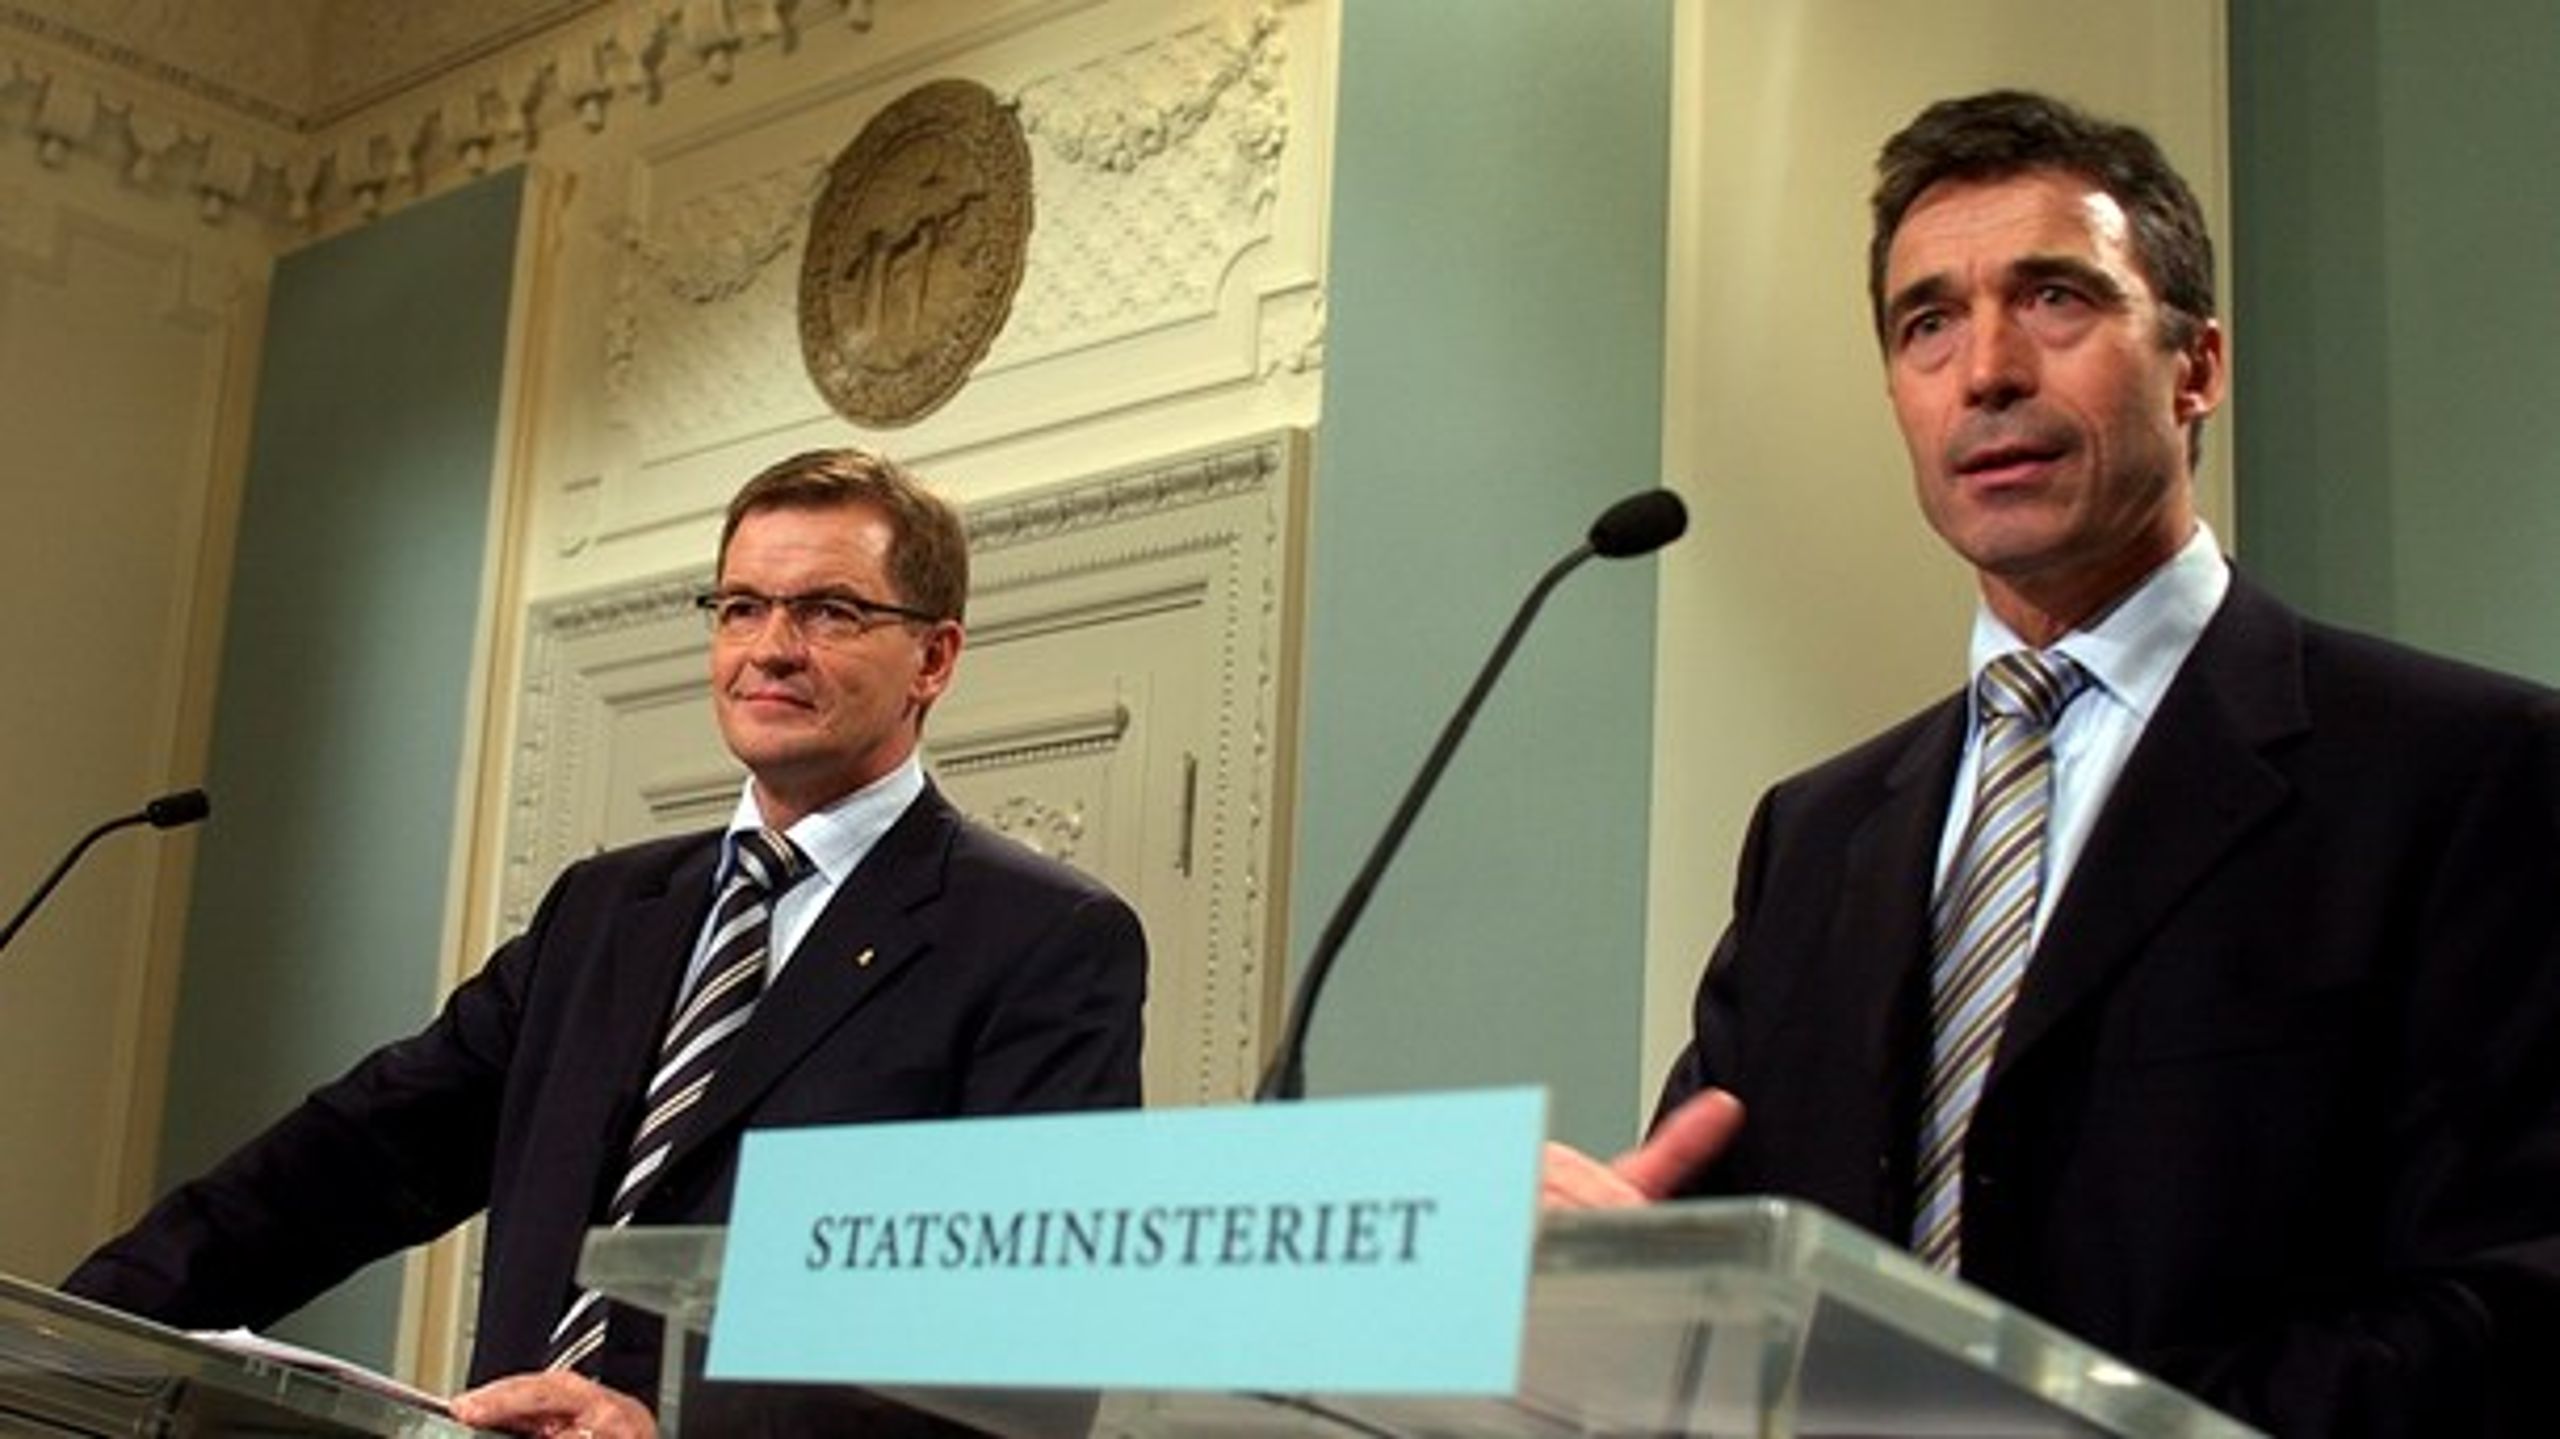 Statsminister Anders Fogh Rasmussen (V) og vicestatsminister Bendt Bendtsen (K) ved et pressemøde i 2005, hvor de præsenterer nyt regeringsgrundlag.&nbsp;